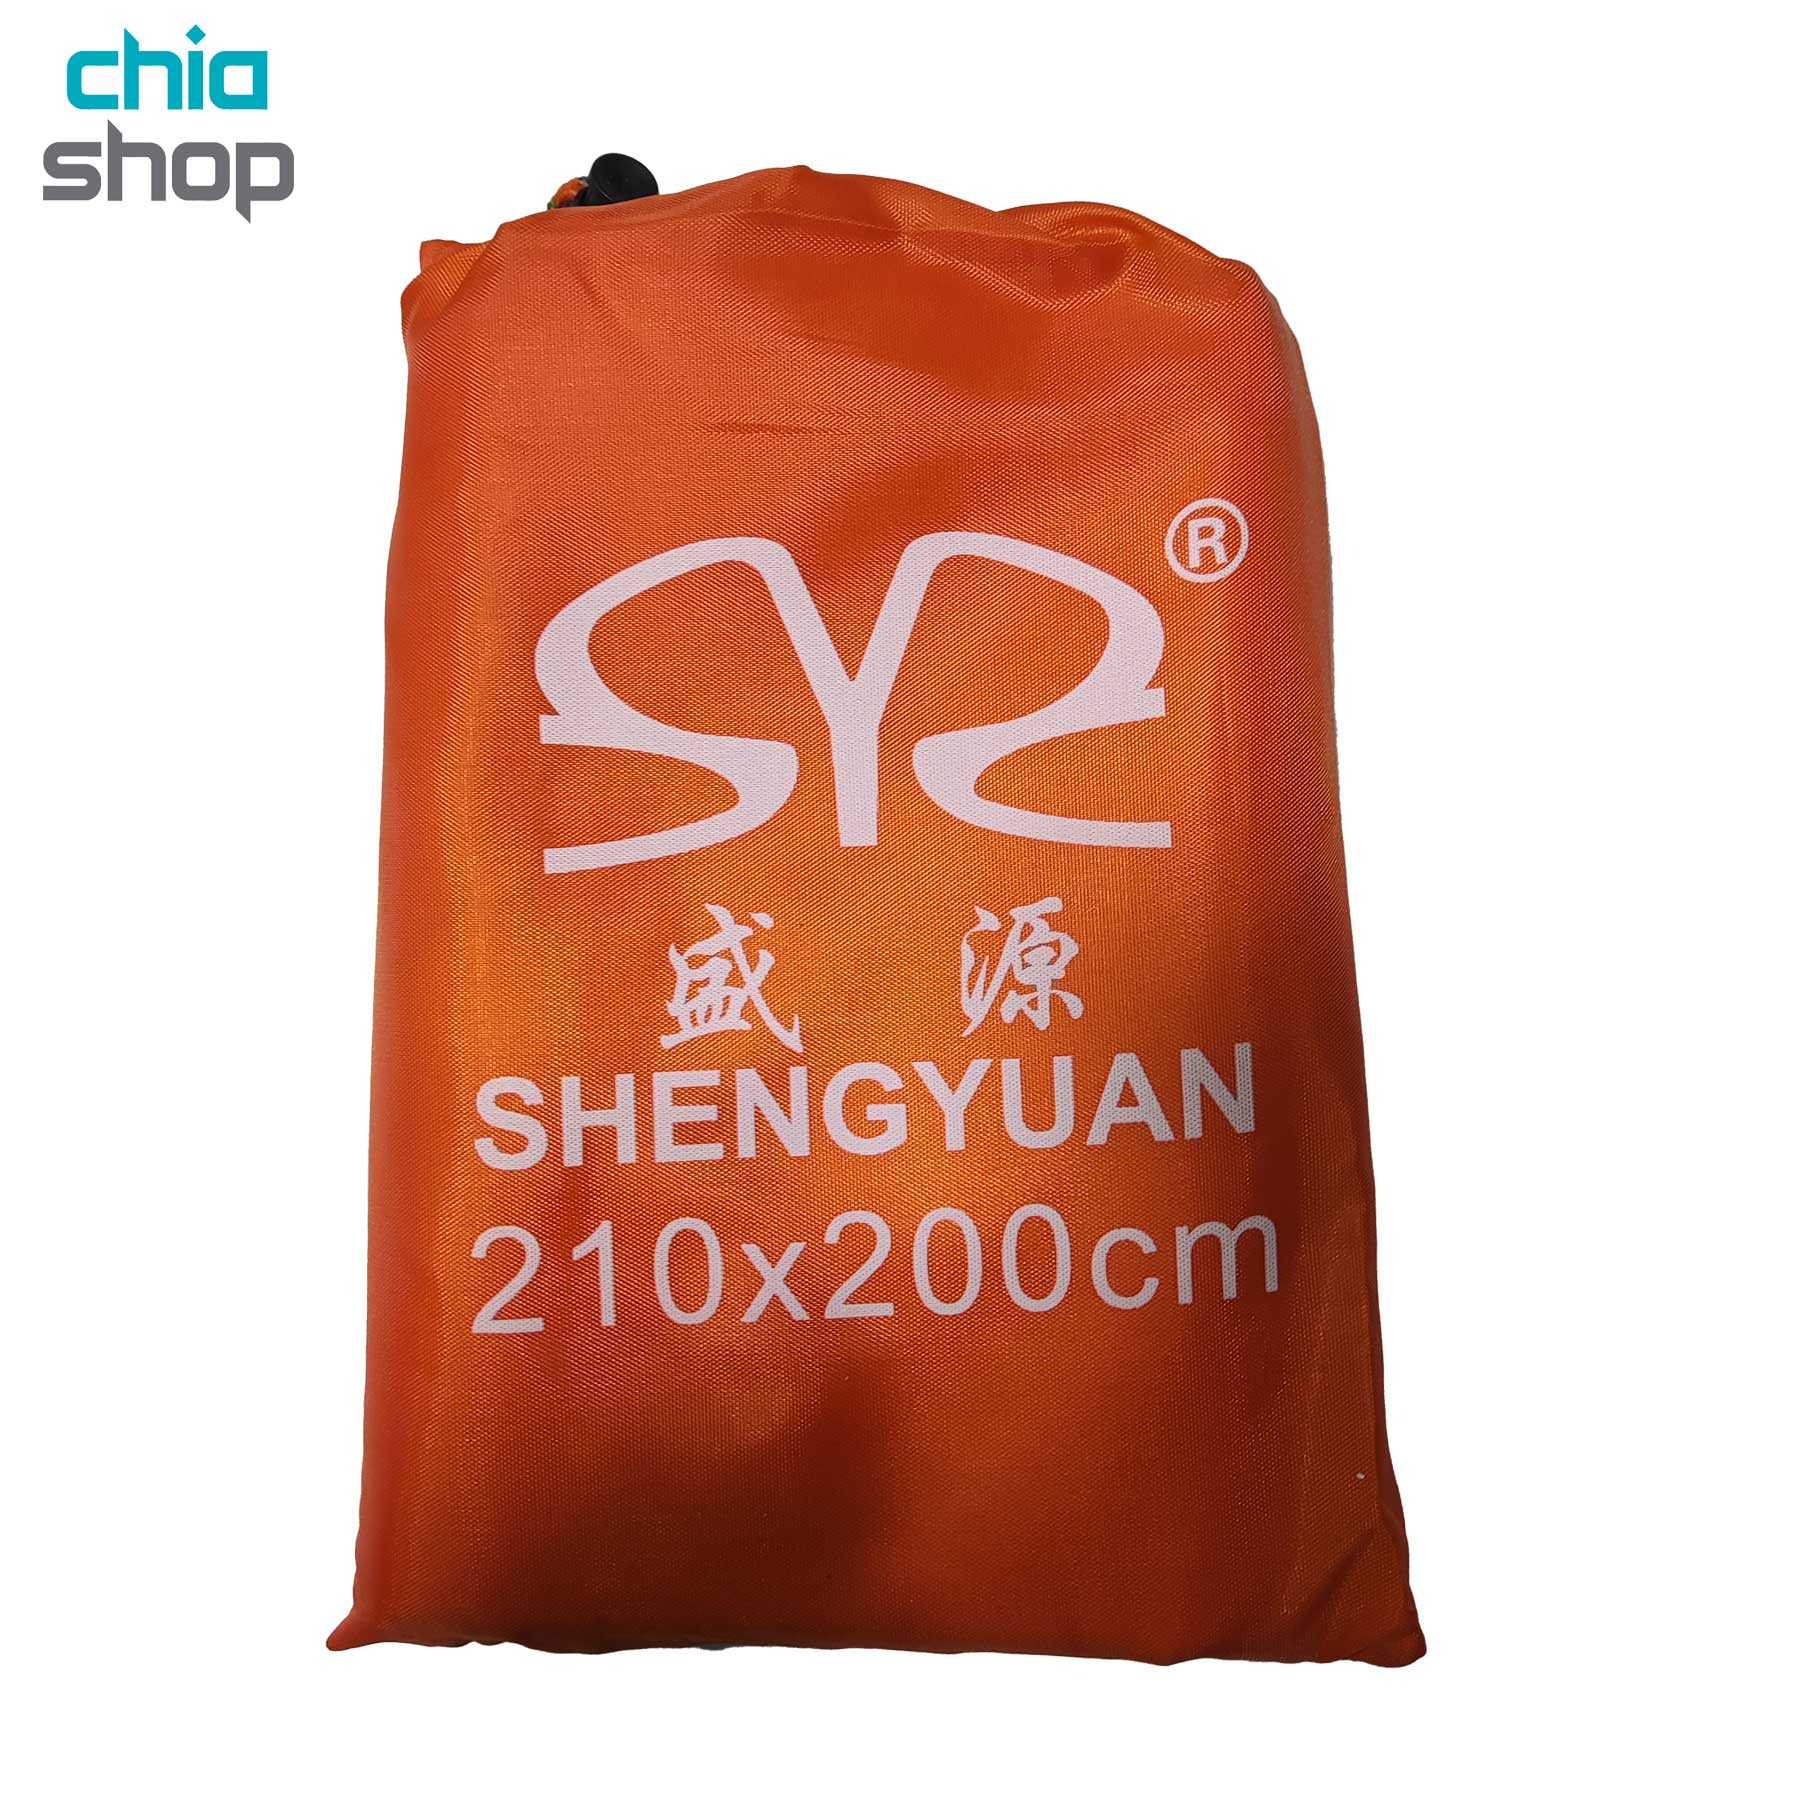 زیرانداز چادر شنگ یوان مدل SYS 210X200